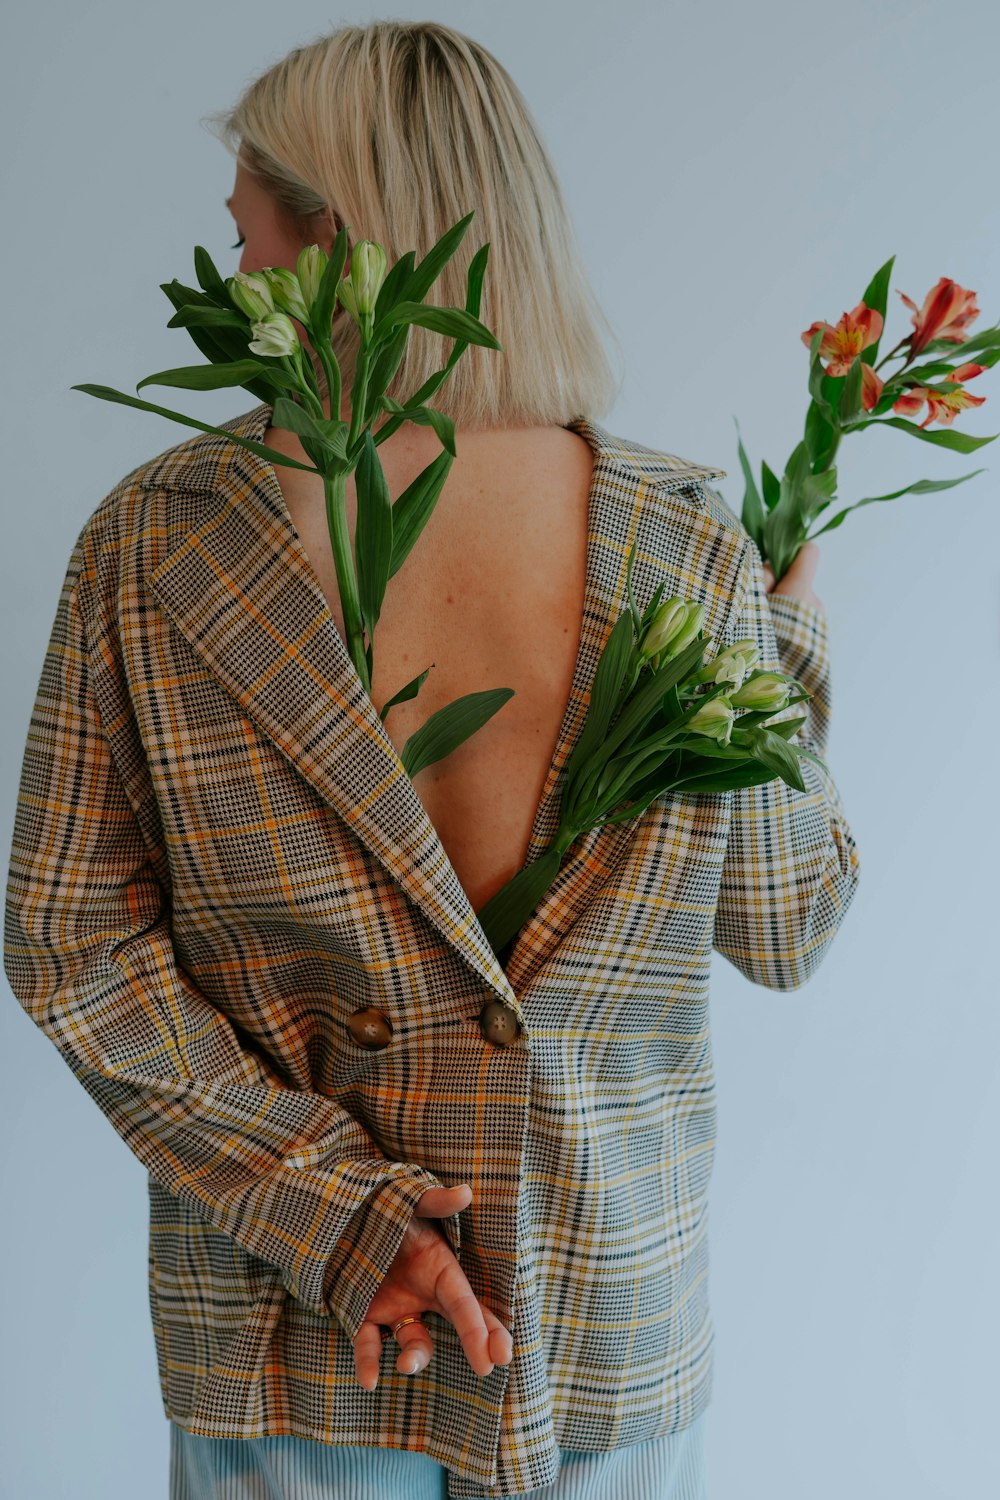 une femme portant une veste à carreaux tenant des fleurs